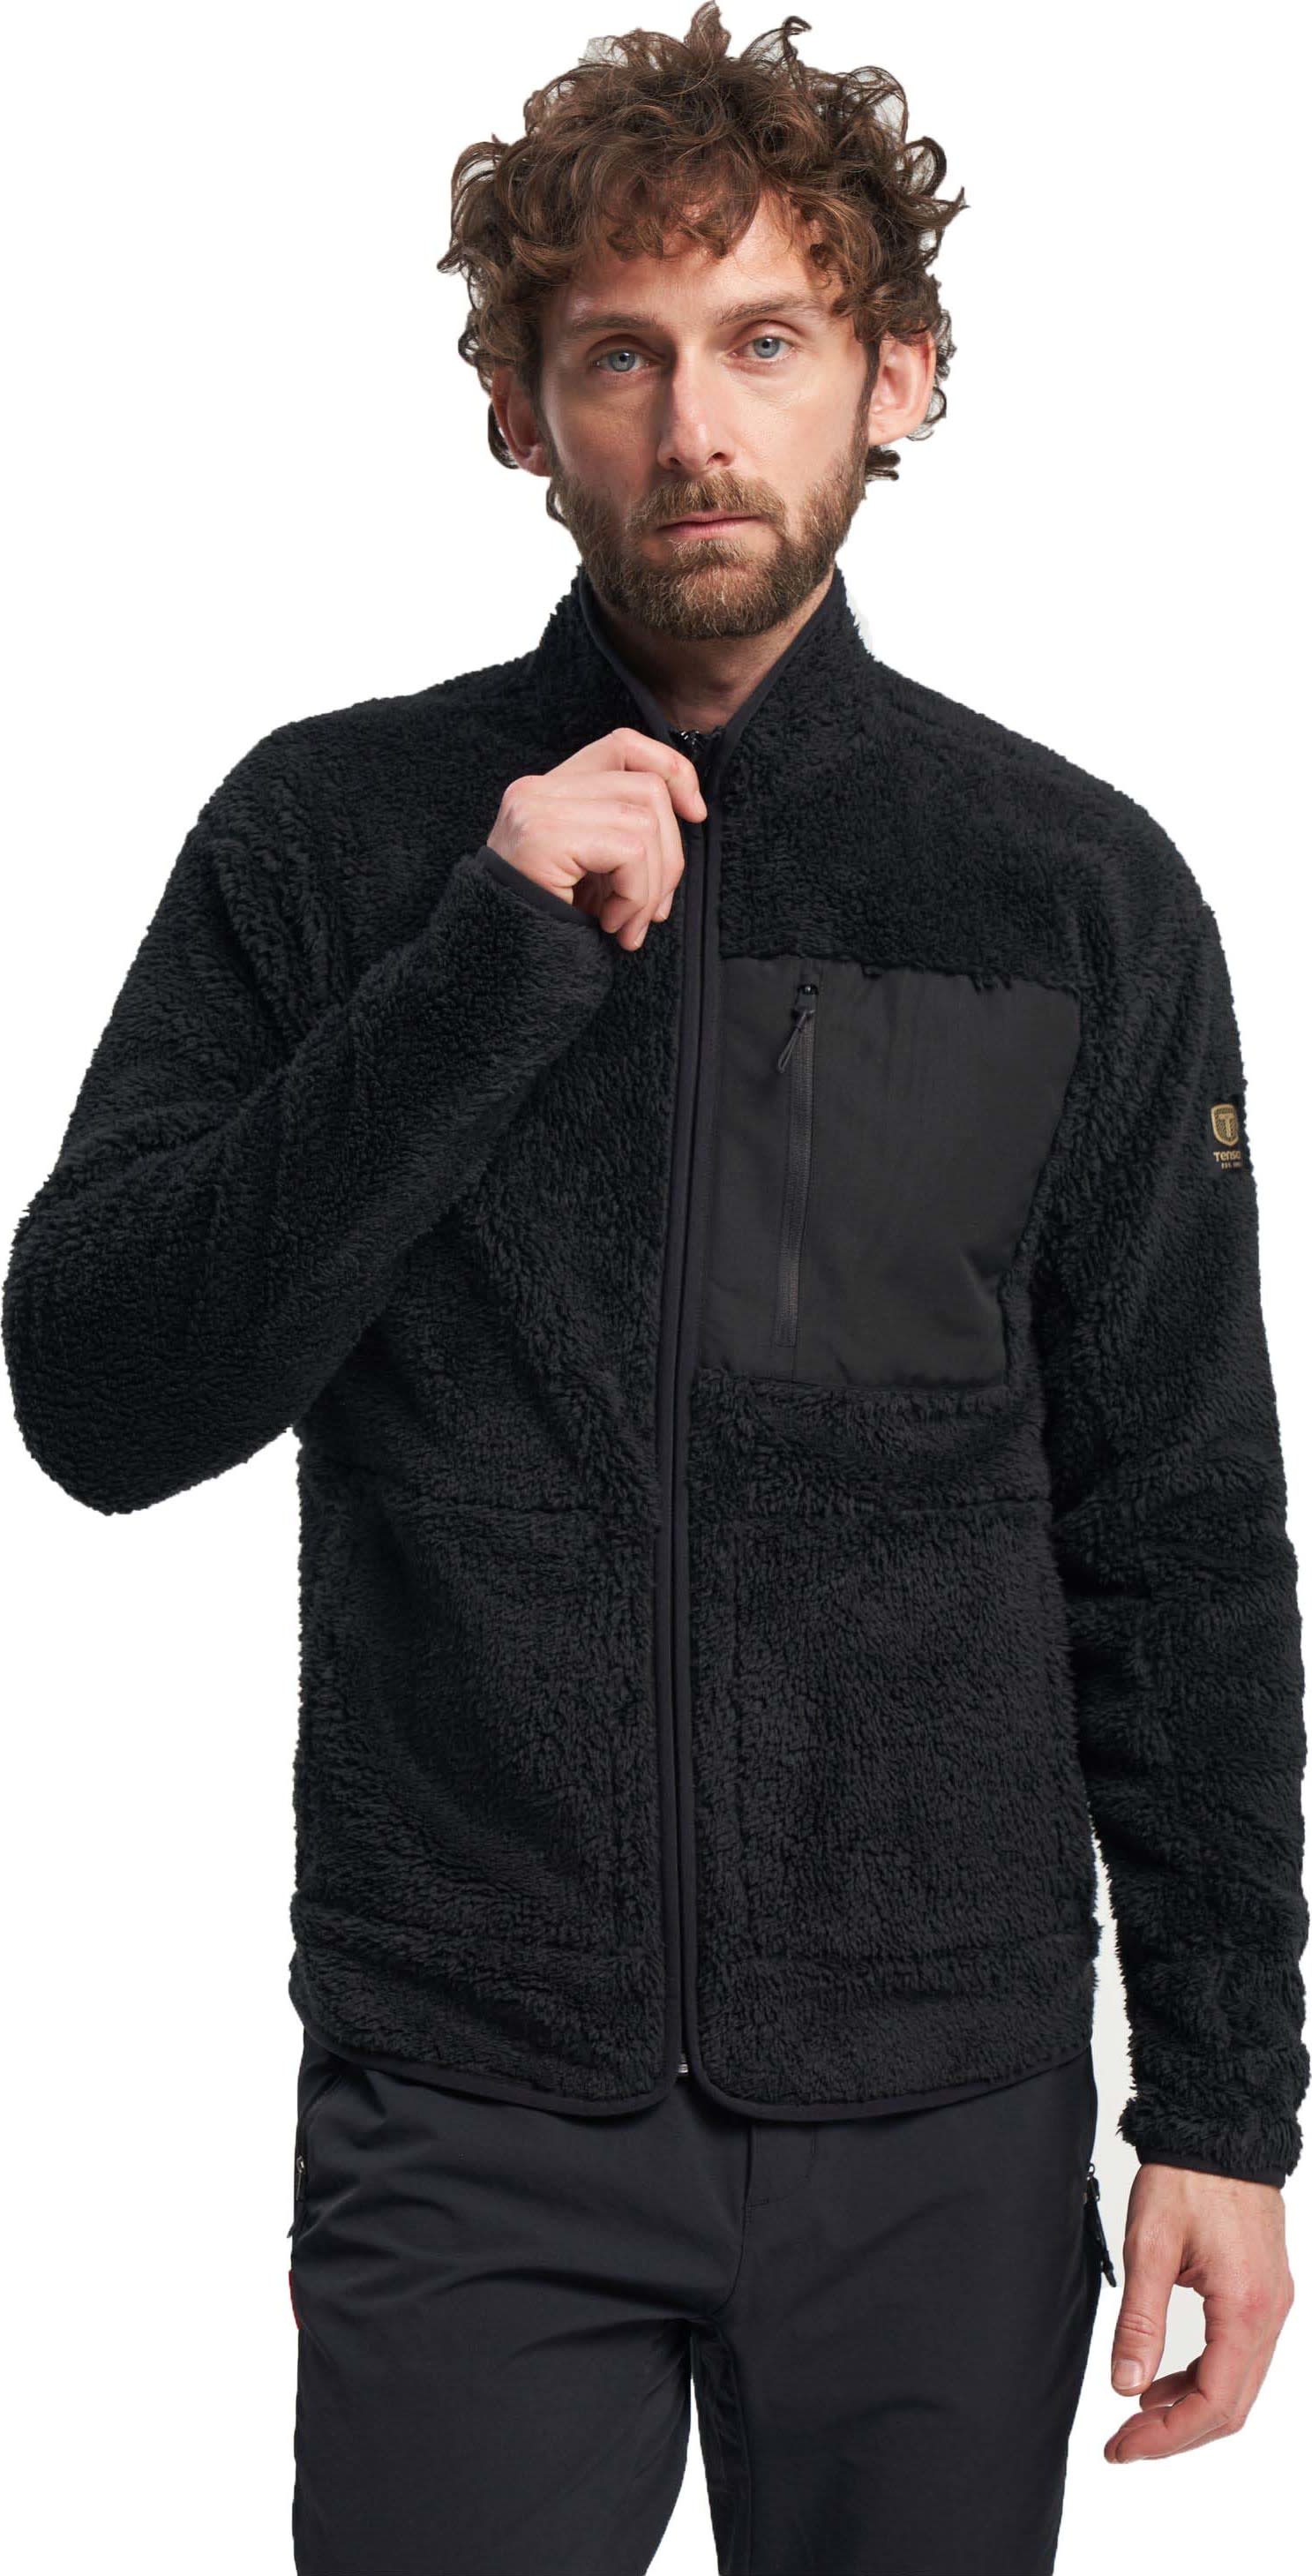 Men's Thermal Pile Zip Jacket Black